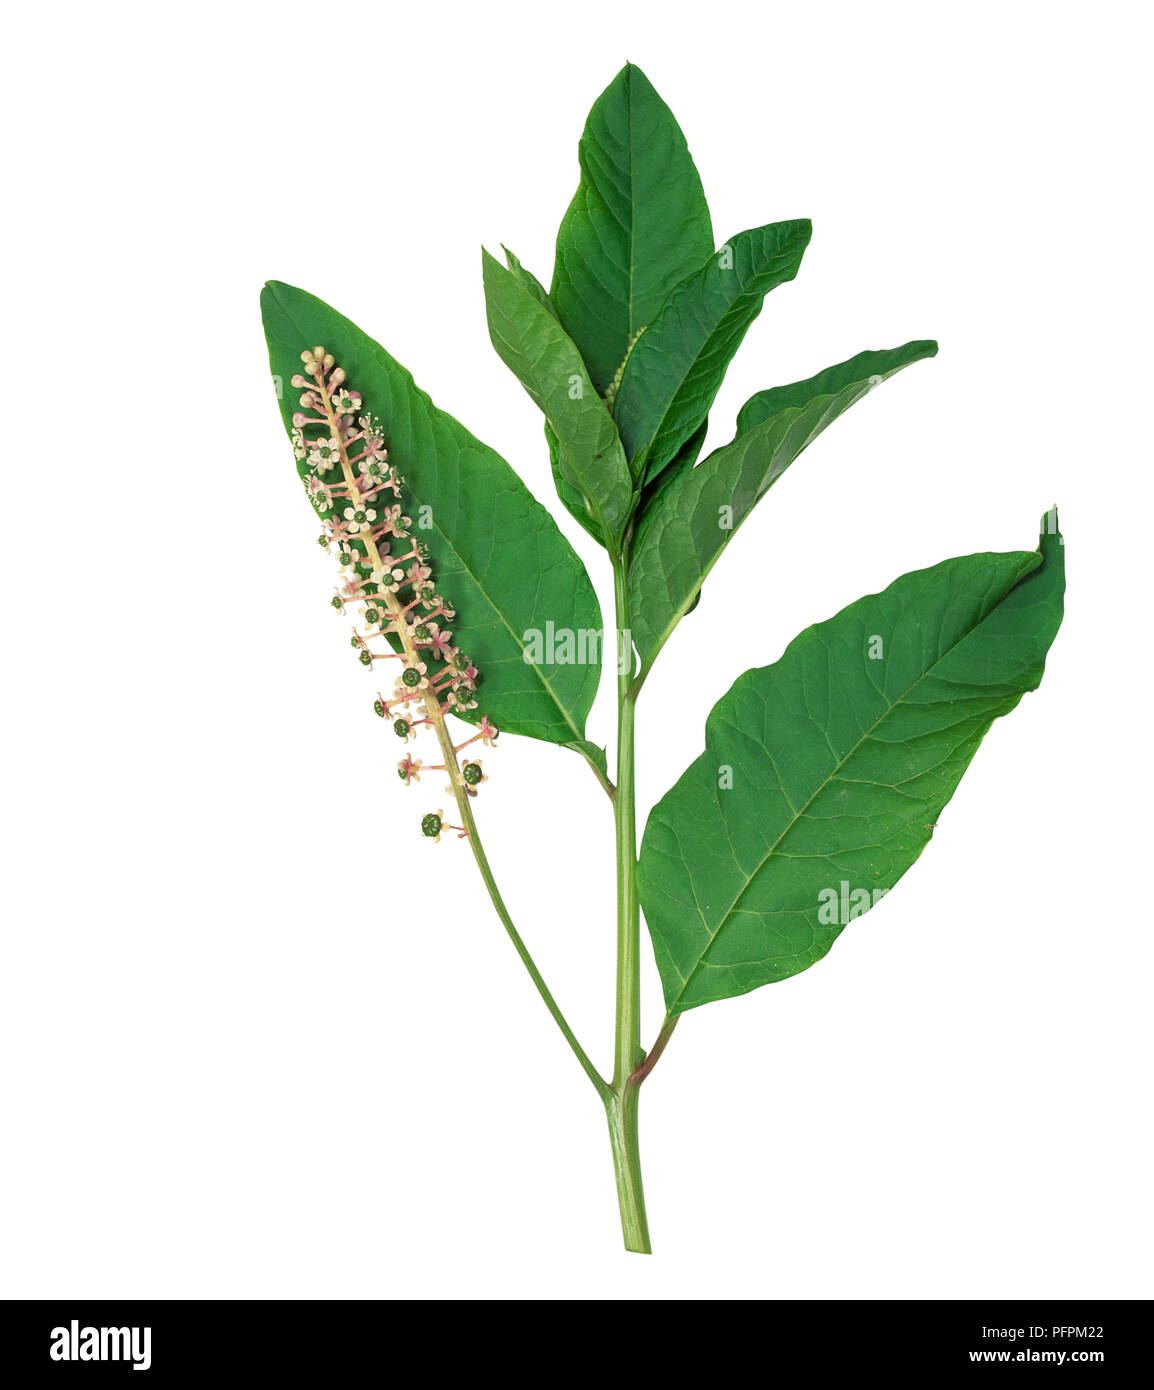 Phytolacca americana (américain), du phytolaque (pokeweed) avec manette de fructification fruit non mûr et vert, tiges de fleurs en racèmes simples et des feuilles Banque D'Images